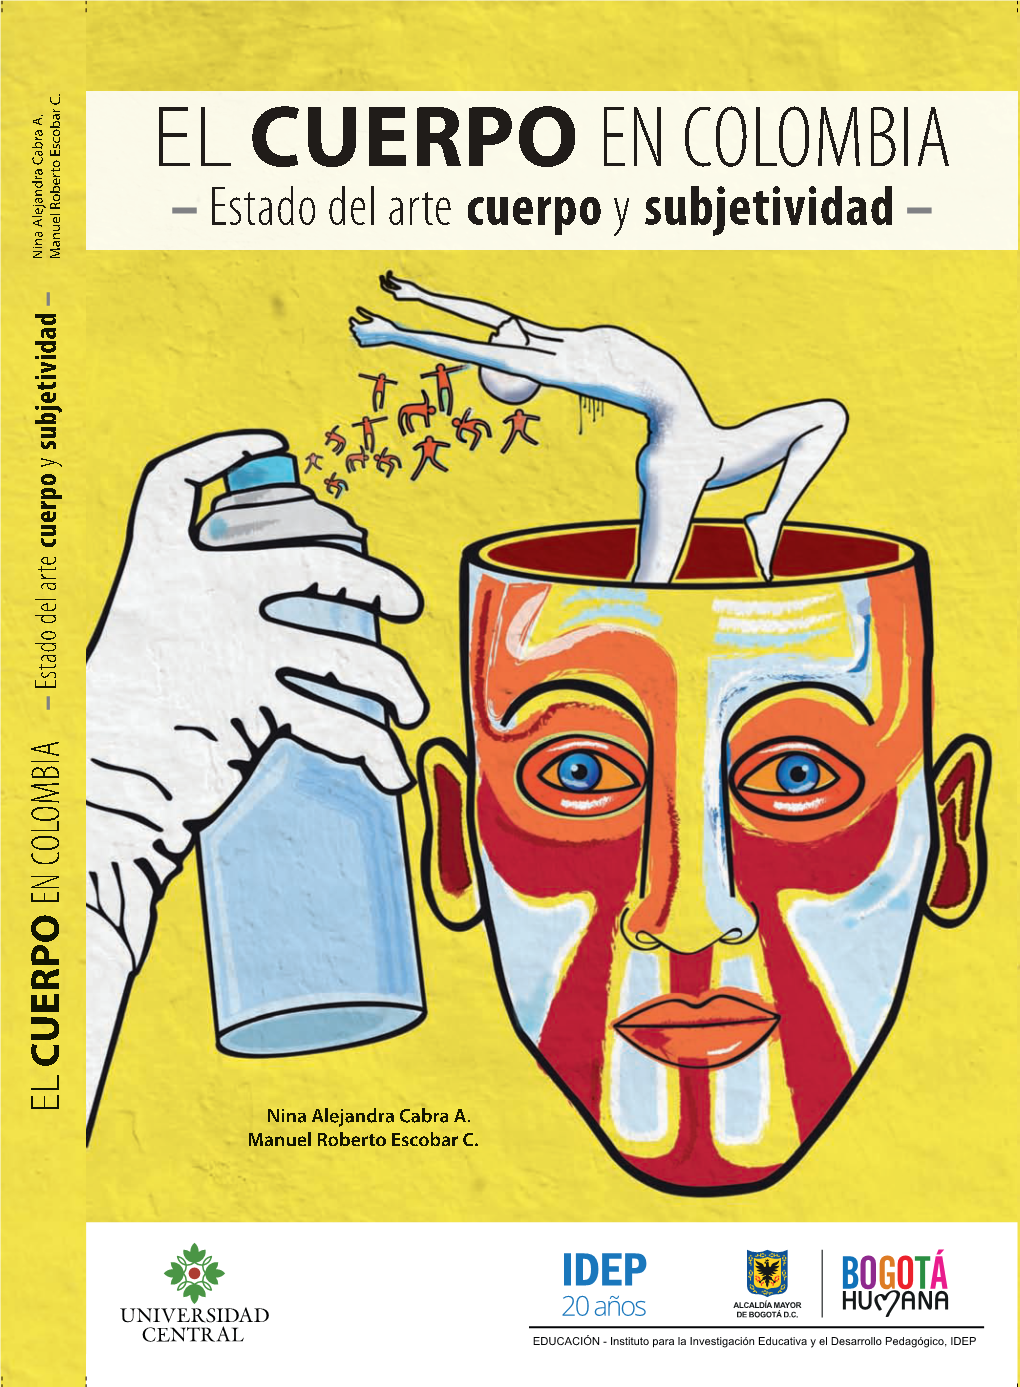 El Cuerpo En Colombia. Estado Del Arte Cuerpo Y Subjetividad ISBN: 978-958-26-0207-9 Primera Edición: Mayo De 2014 © Nina Alejandra Cabra A